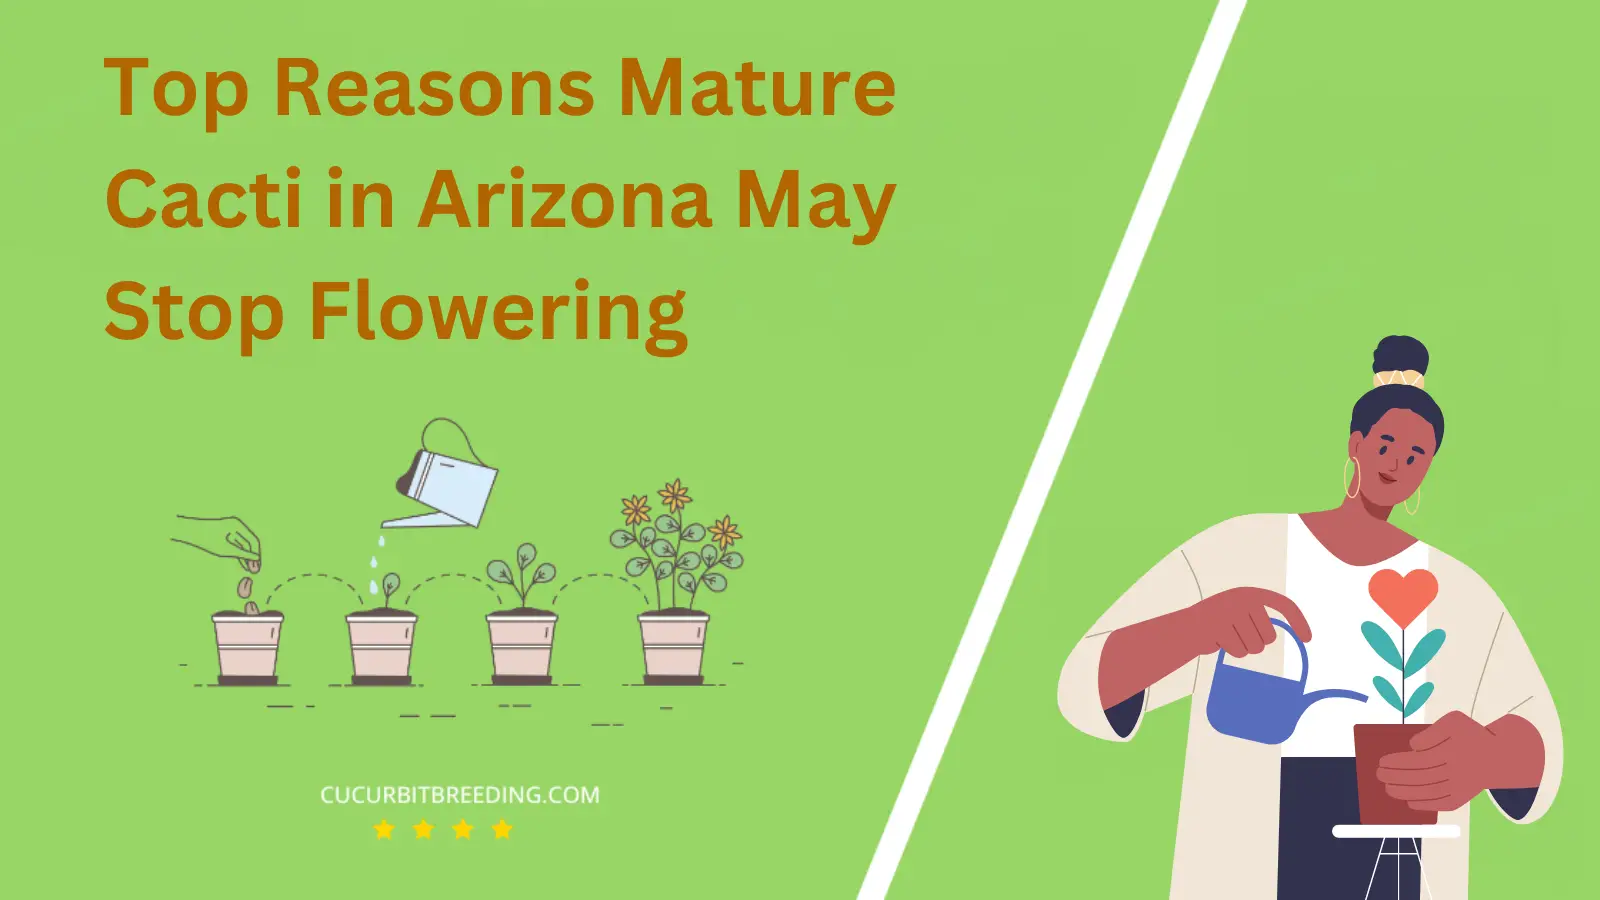 Top Reasons Mature Cacti in Arizona May Stop Flowering